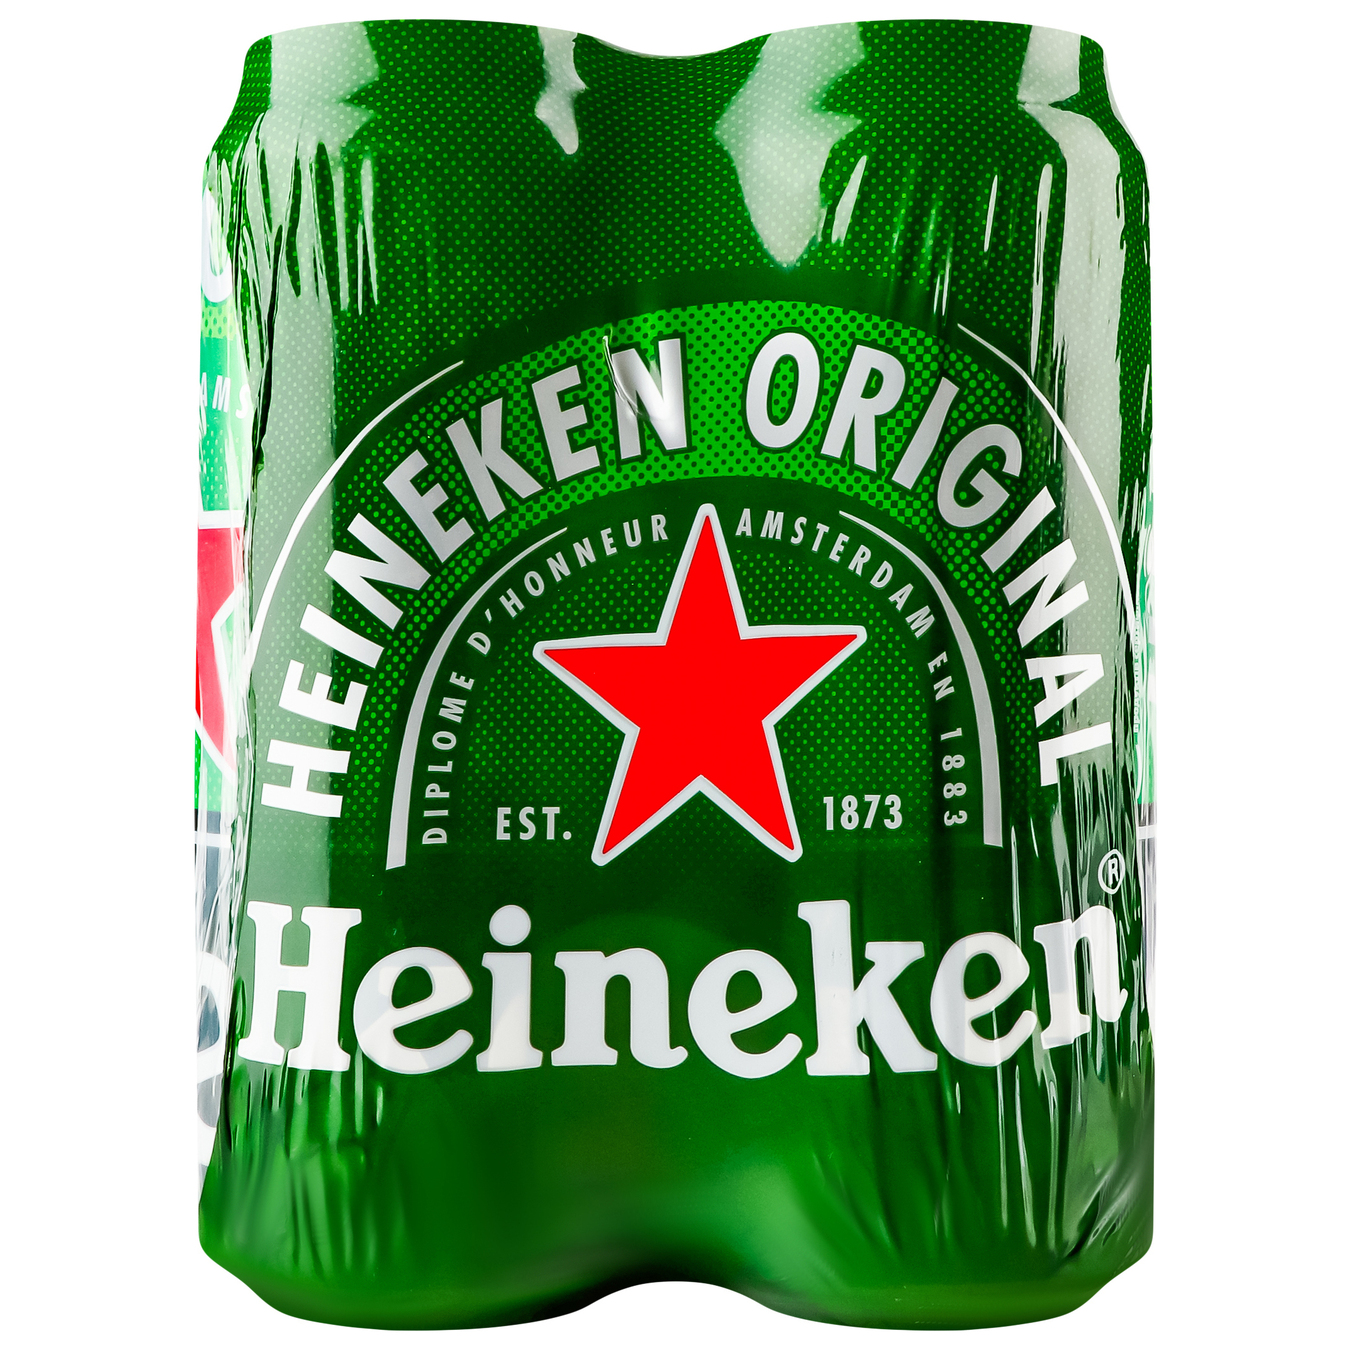 Пиво Heineken світле фільтроване пастеризоване 5% 4*500мл/уп 2